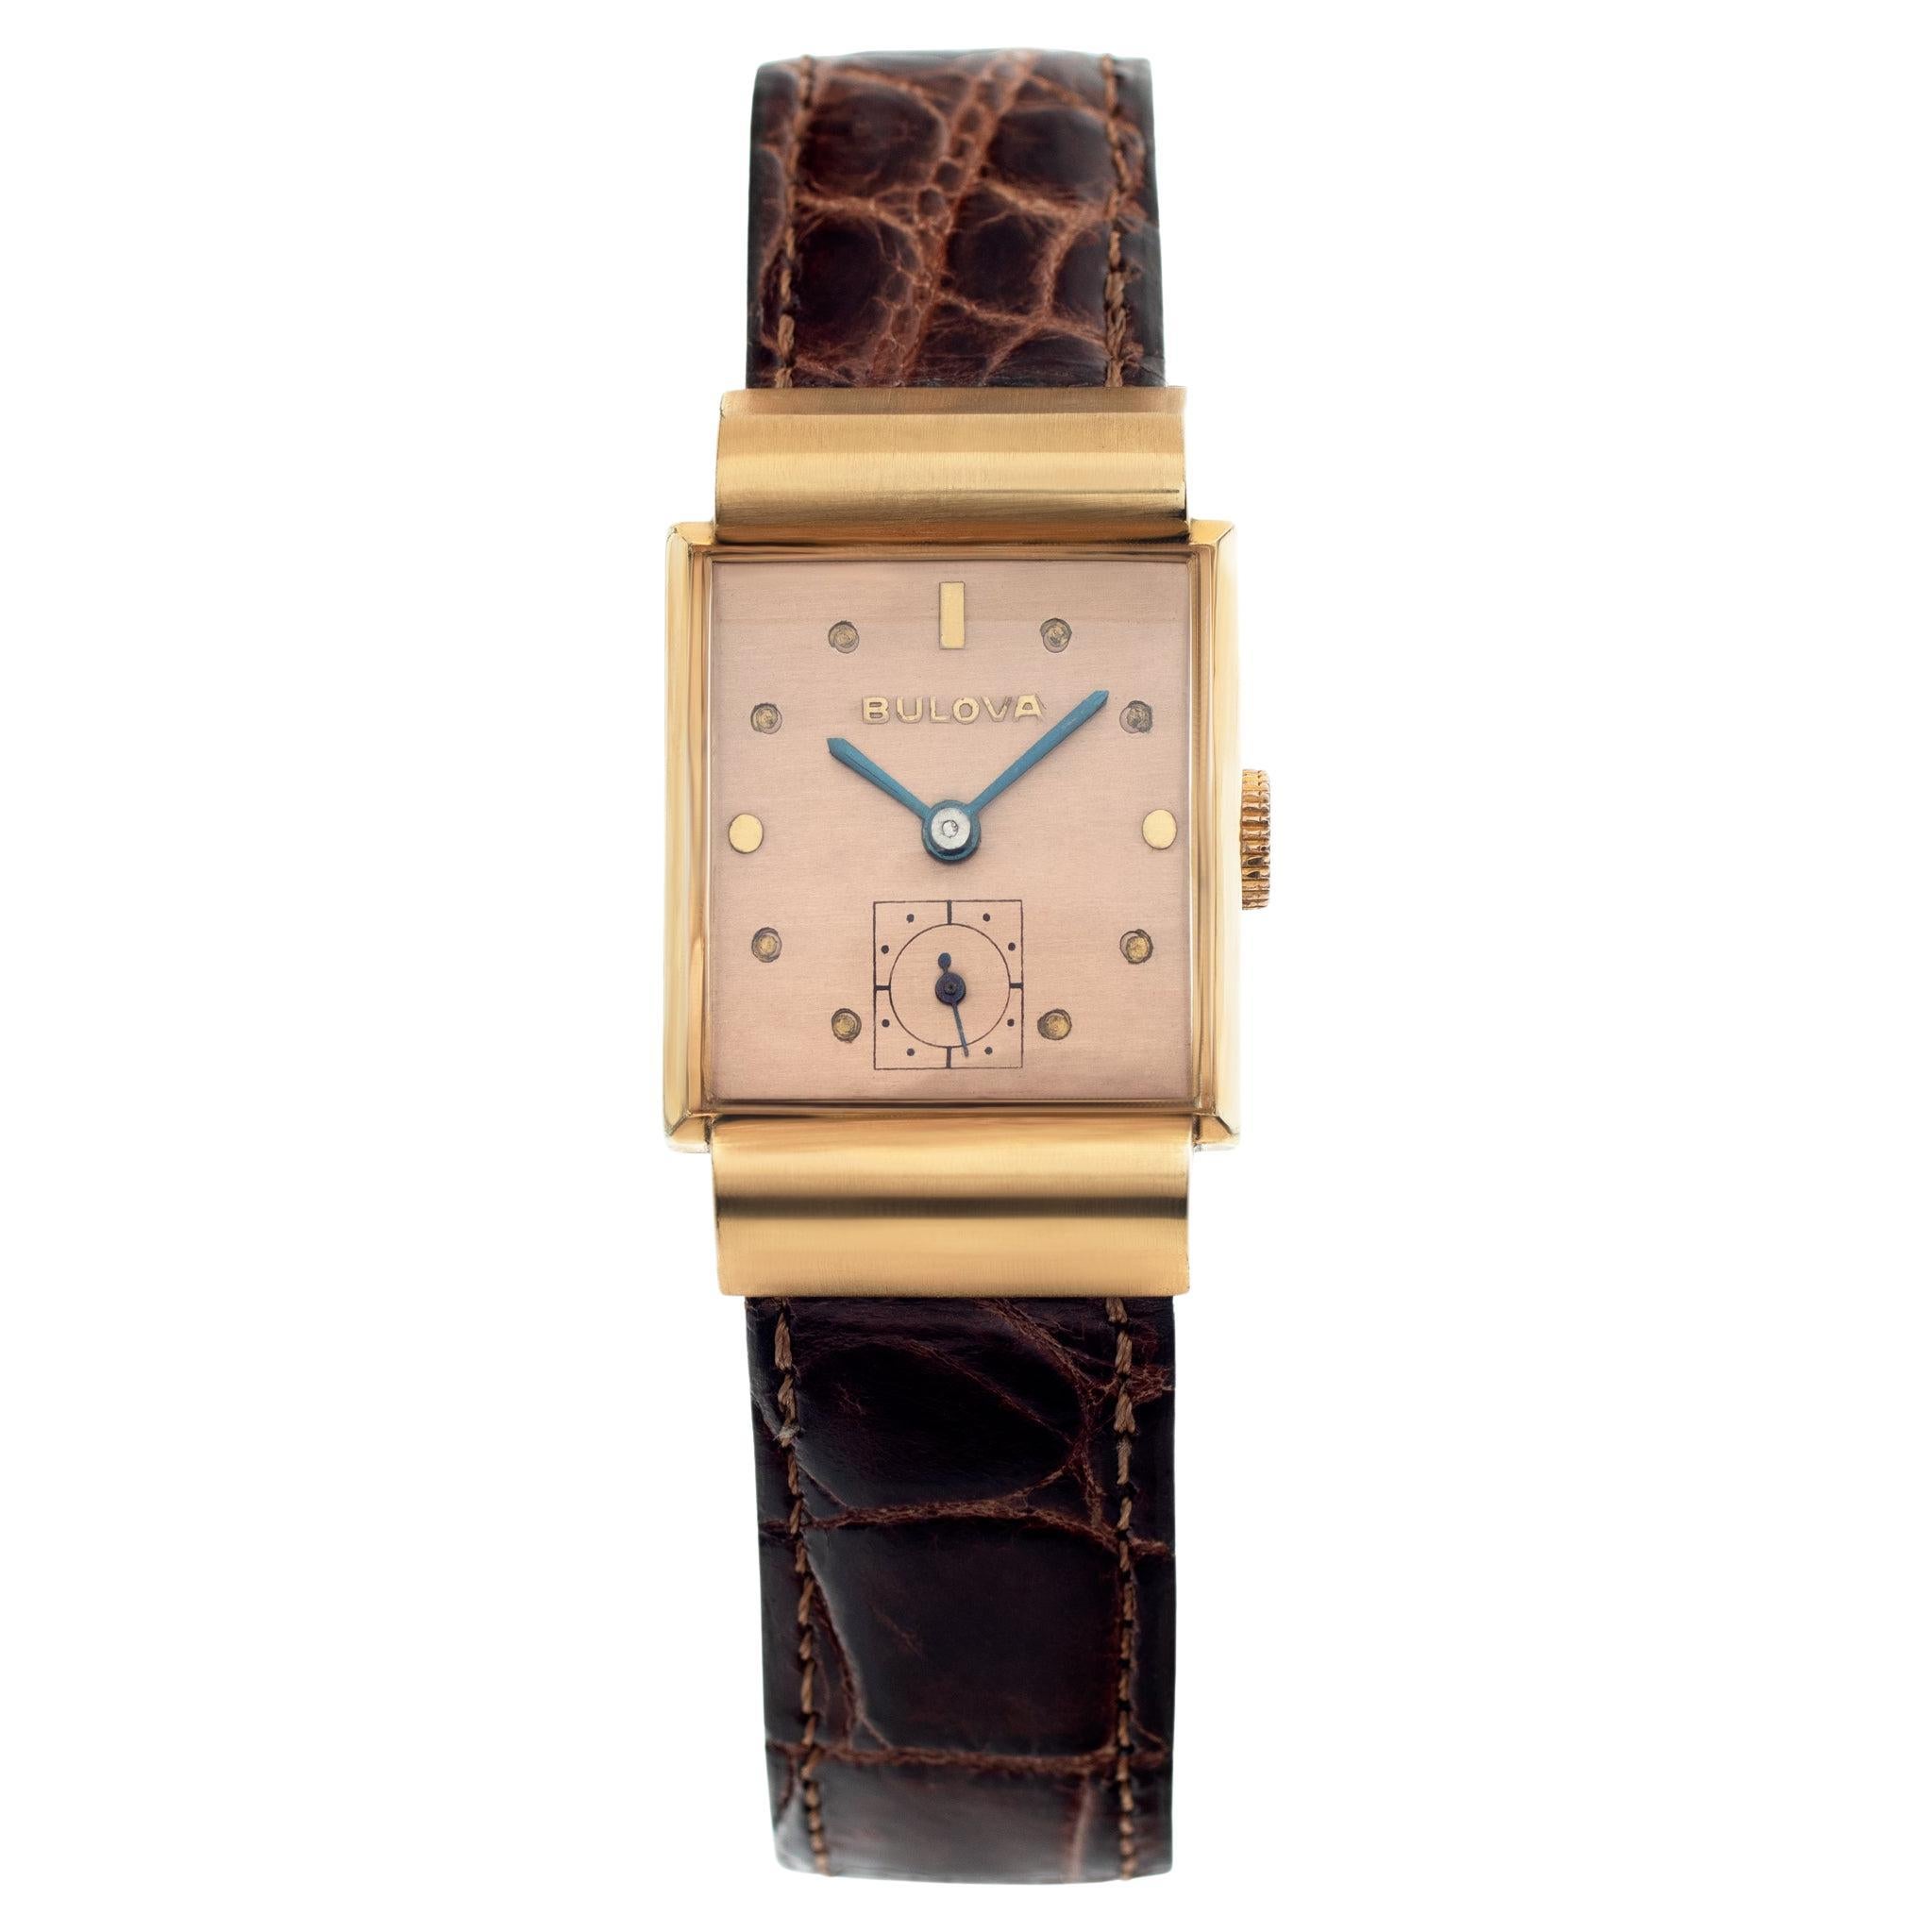 Bulova Manual Wristwatch Ref W4282 For Sale